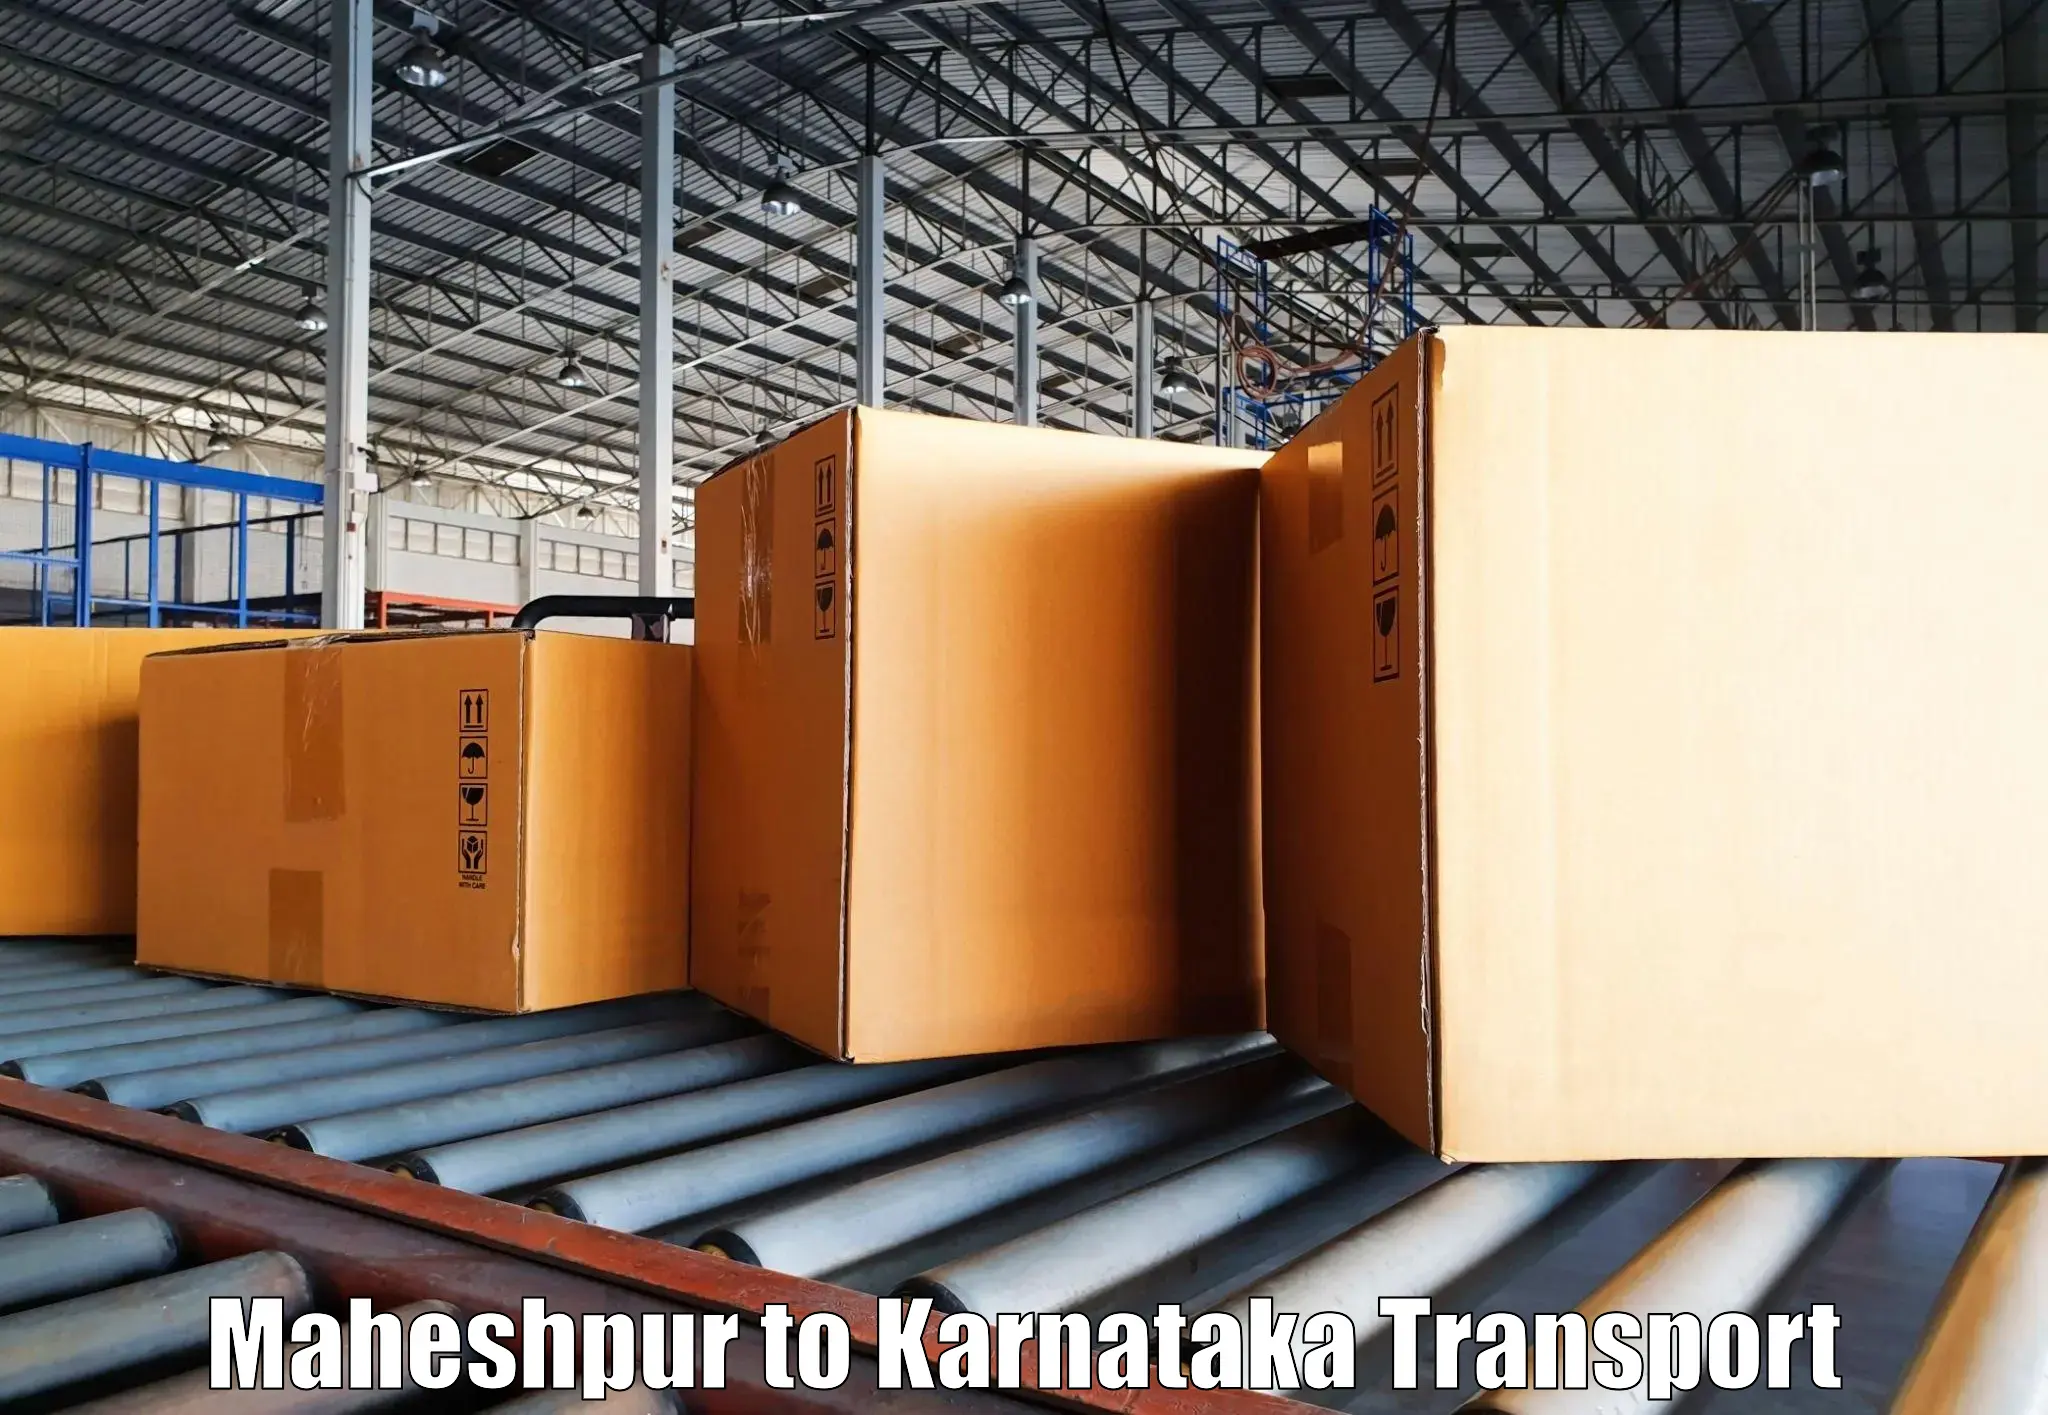 Daily transport service Maheshpur to Alnavar